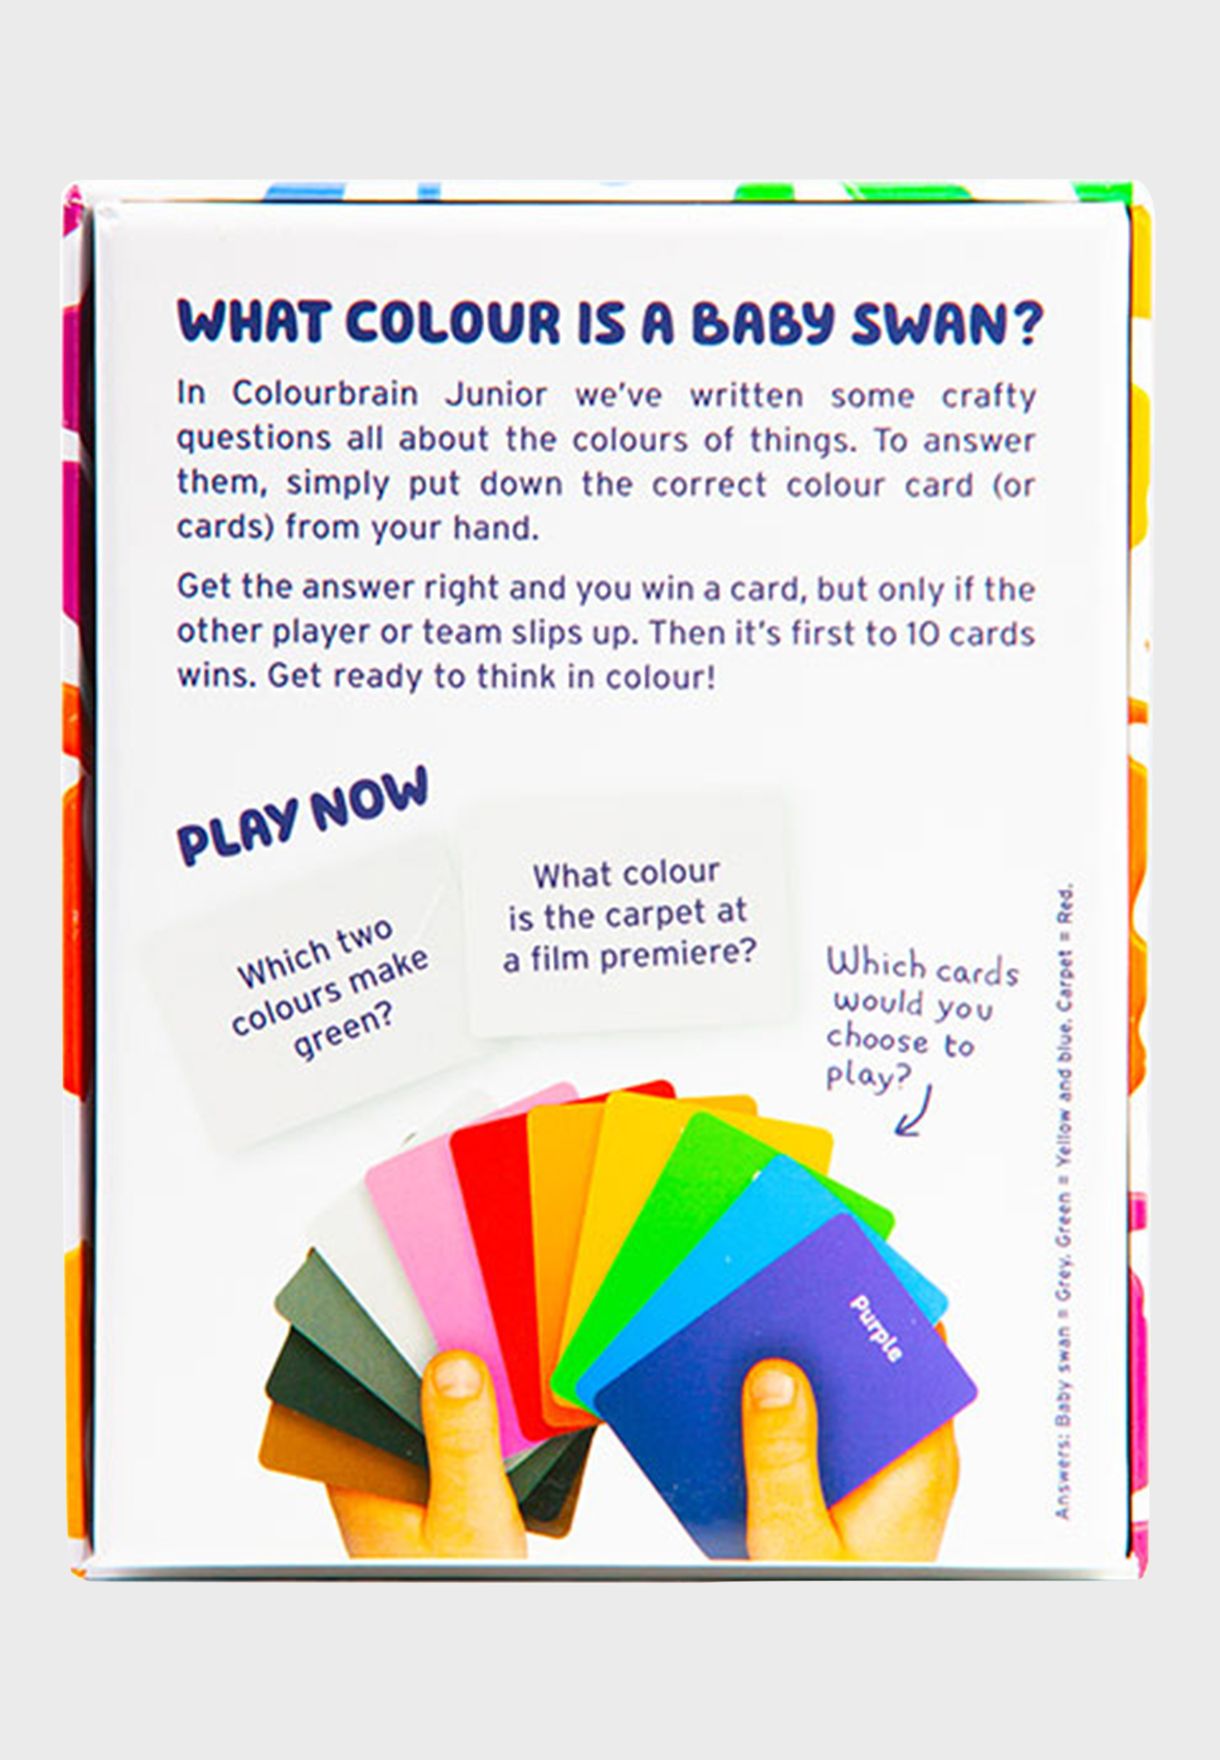 Colour Brain Card Game